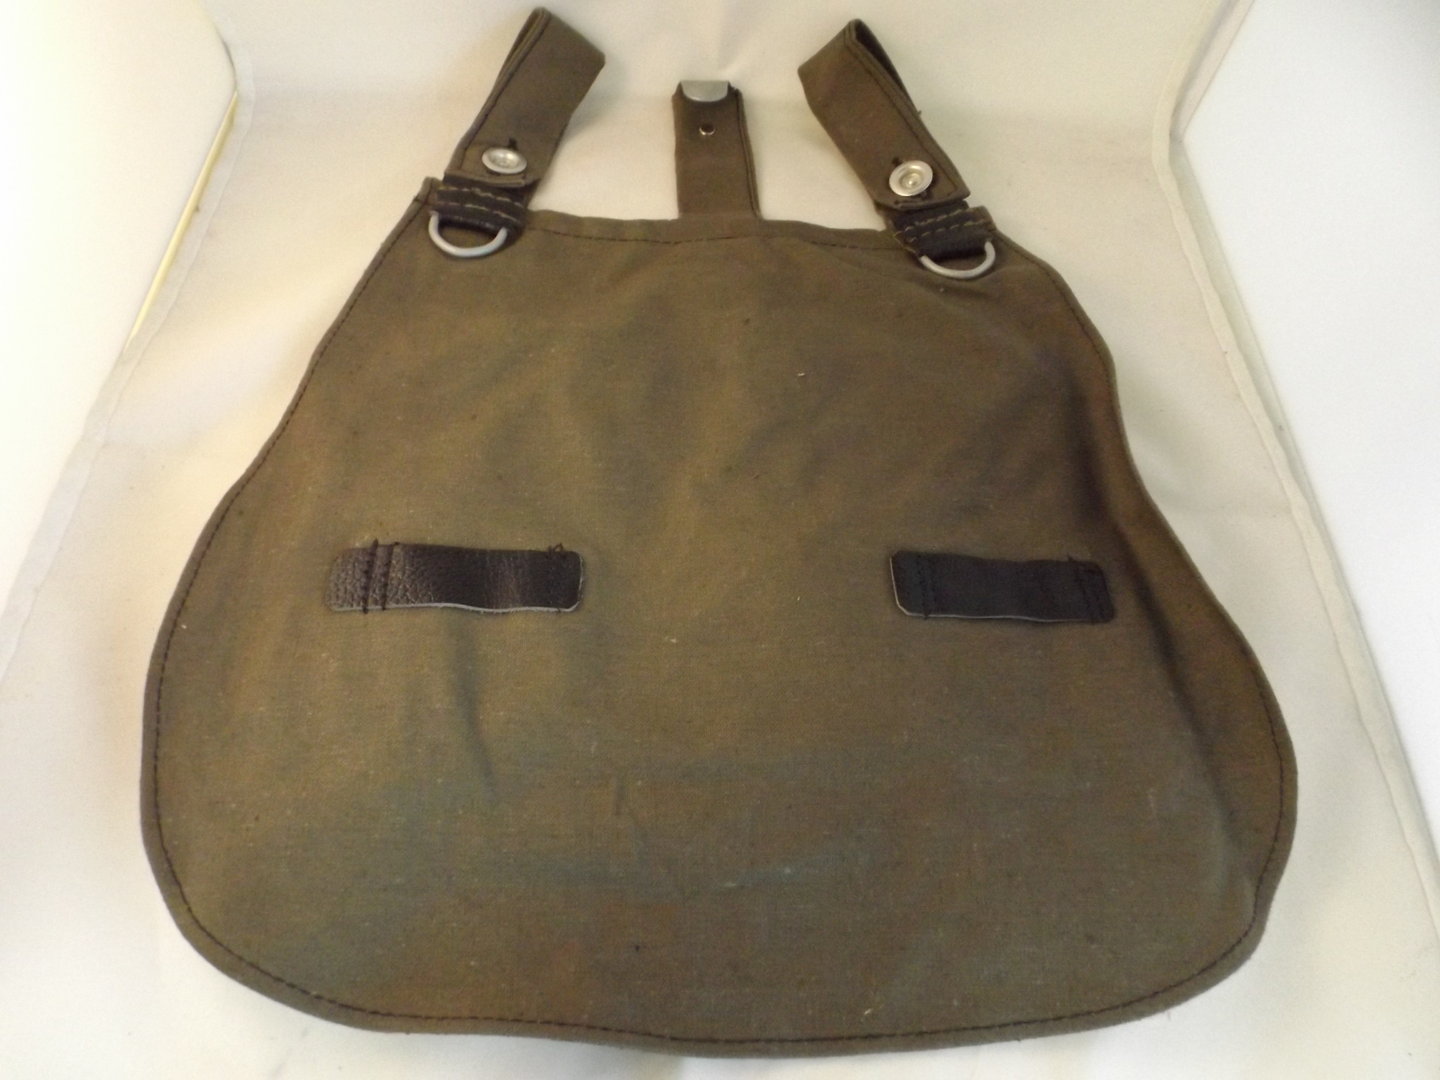 WH M31 Brotbeutel für Uniform Ausrüstung WK2 WWII Combat Bag Wehrmacht Messkit 